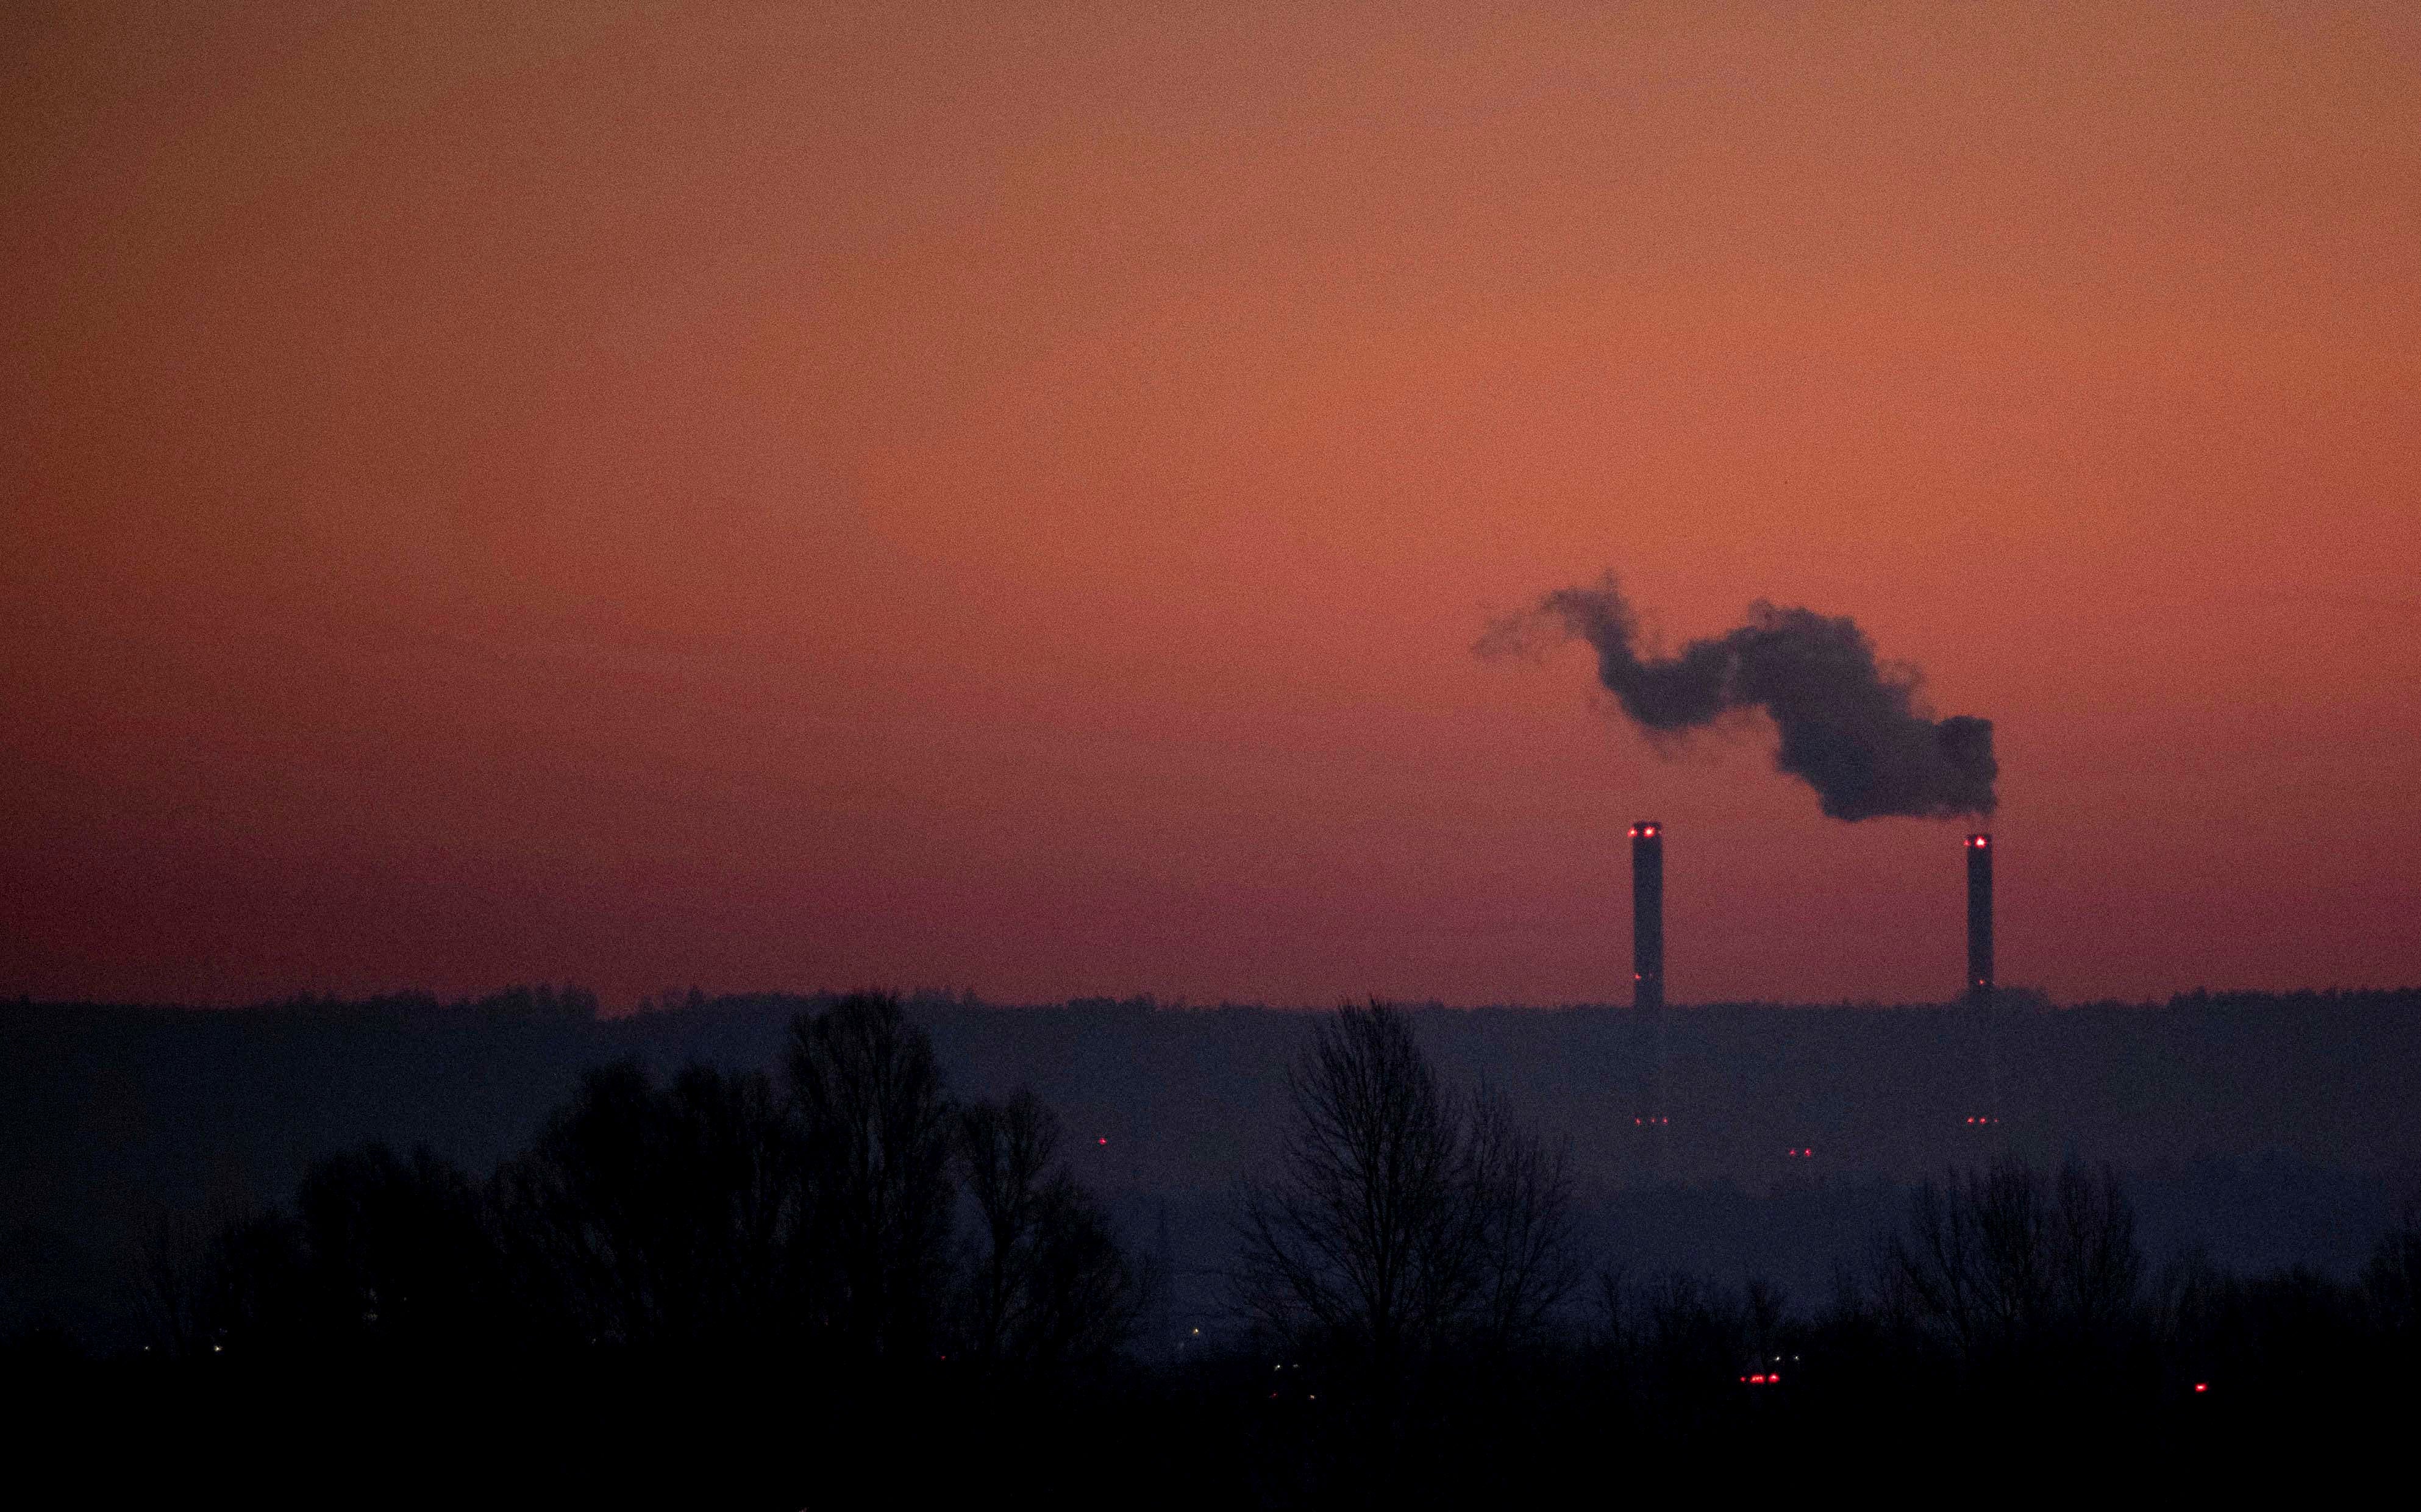 Les tours d’une centrale électrique à charbon, aperçues à l’aube, en Allemagne.